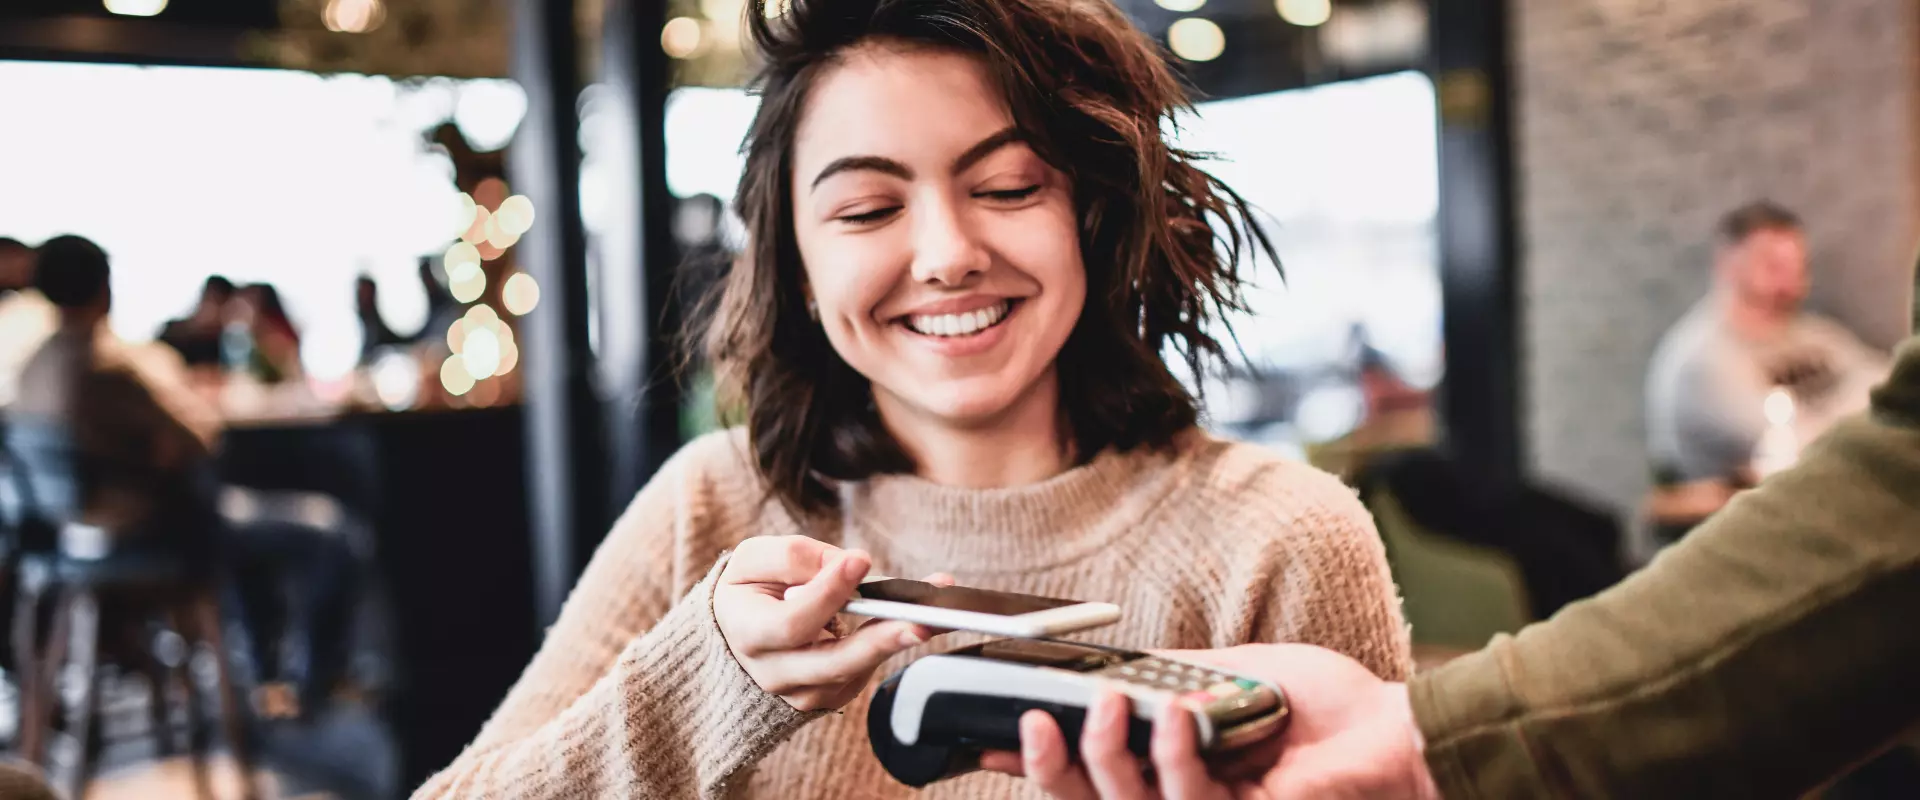 Eine lächelnde Frau benutzt ihr Smartphone, um in einem belebten Café an einem Kartenleser kontaktlos zu bezahlen.